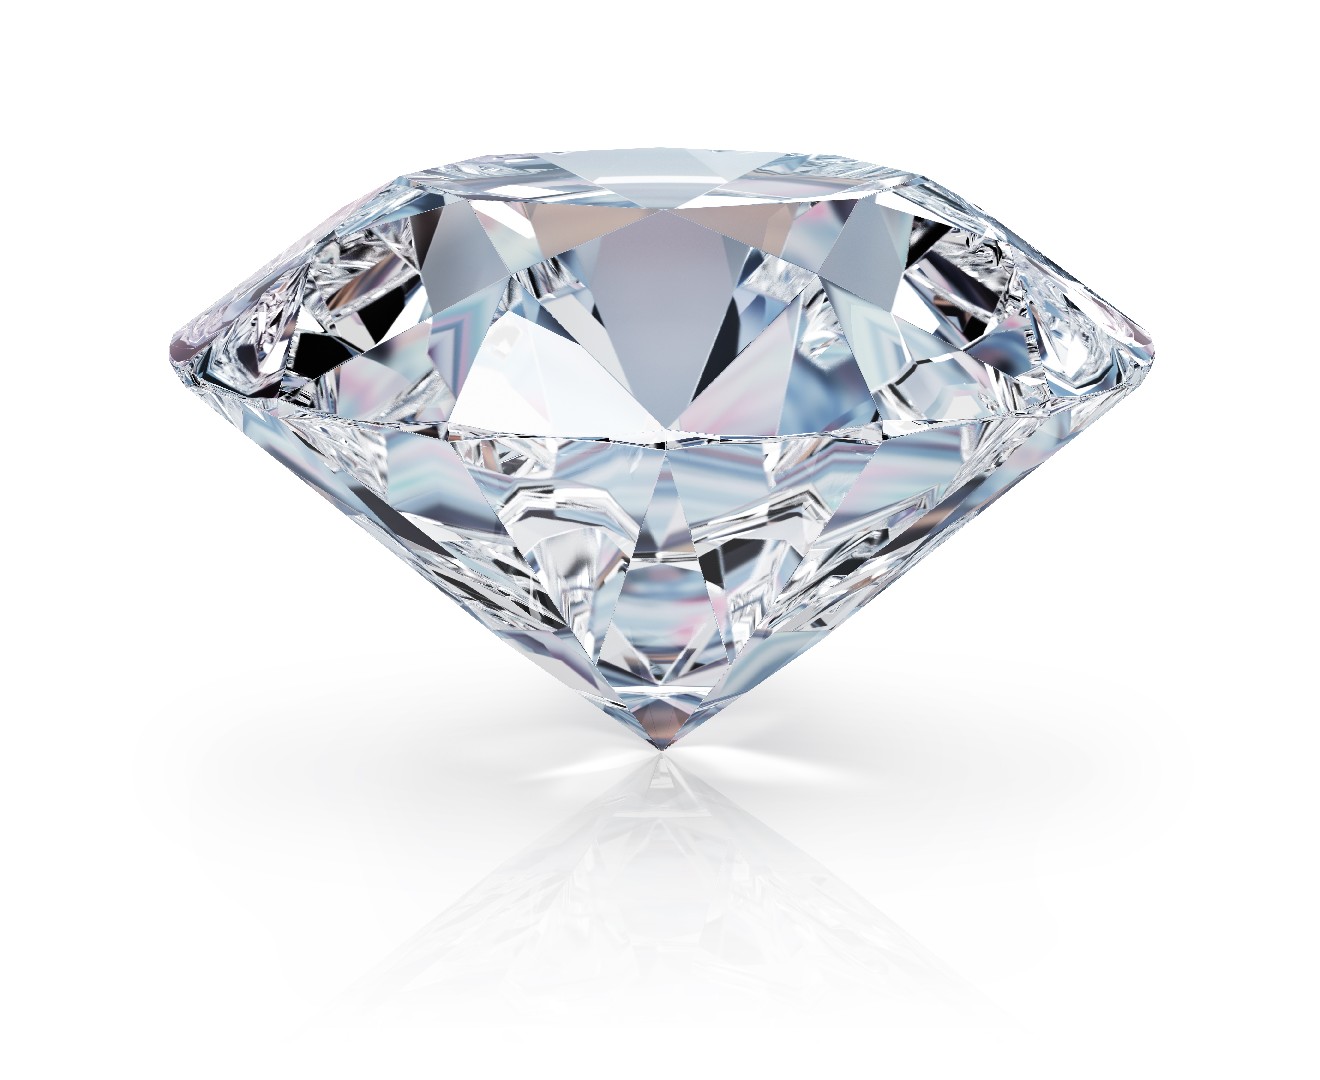 Diamante (pedra preciosa) (Diamond gemstone)